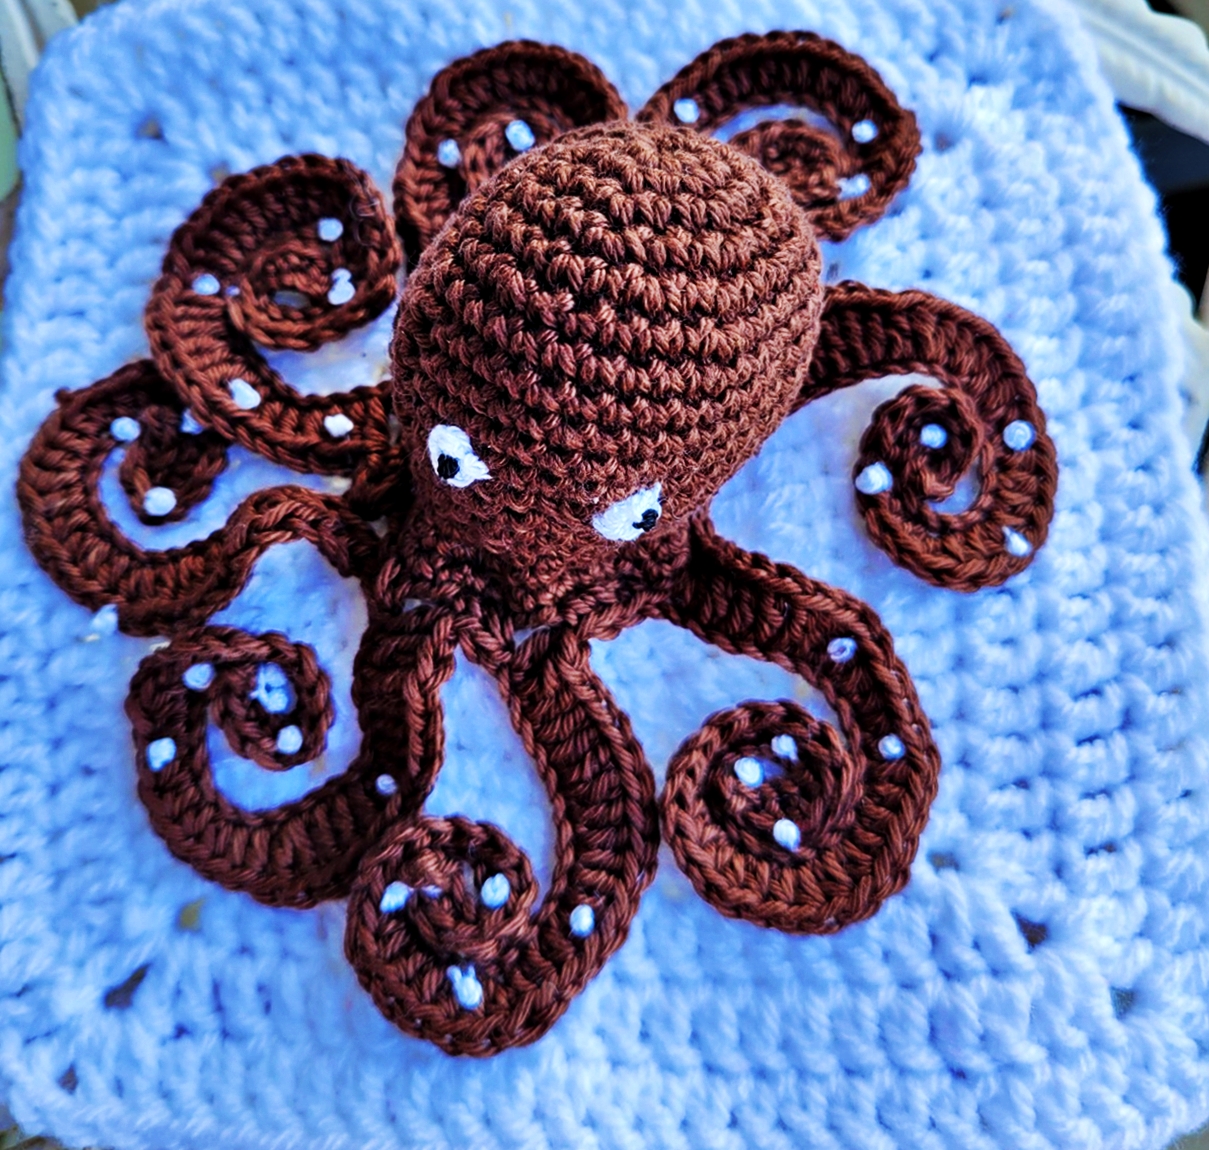 O = Octopus